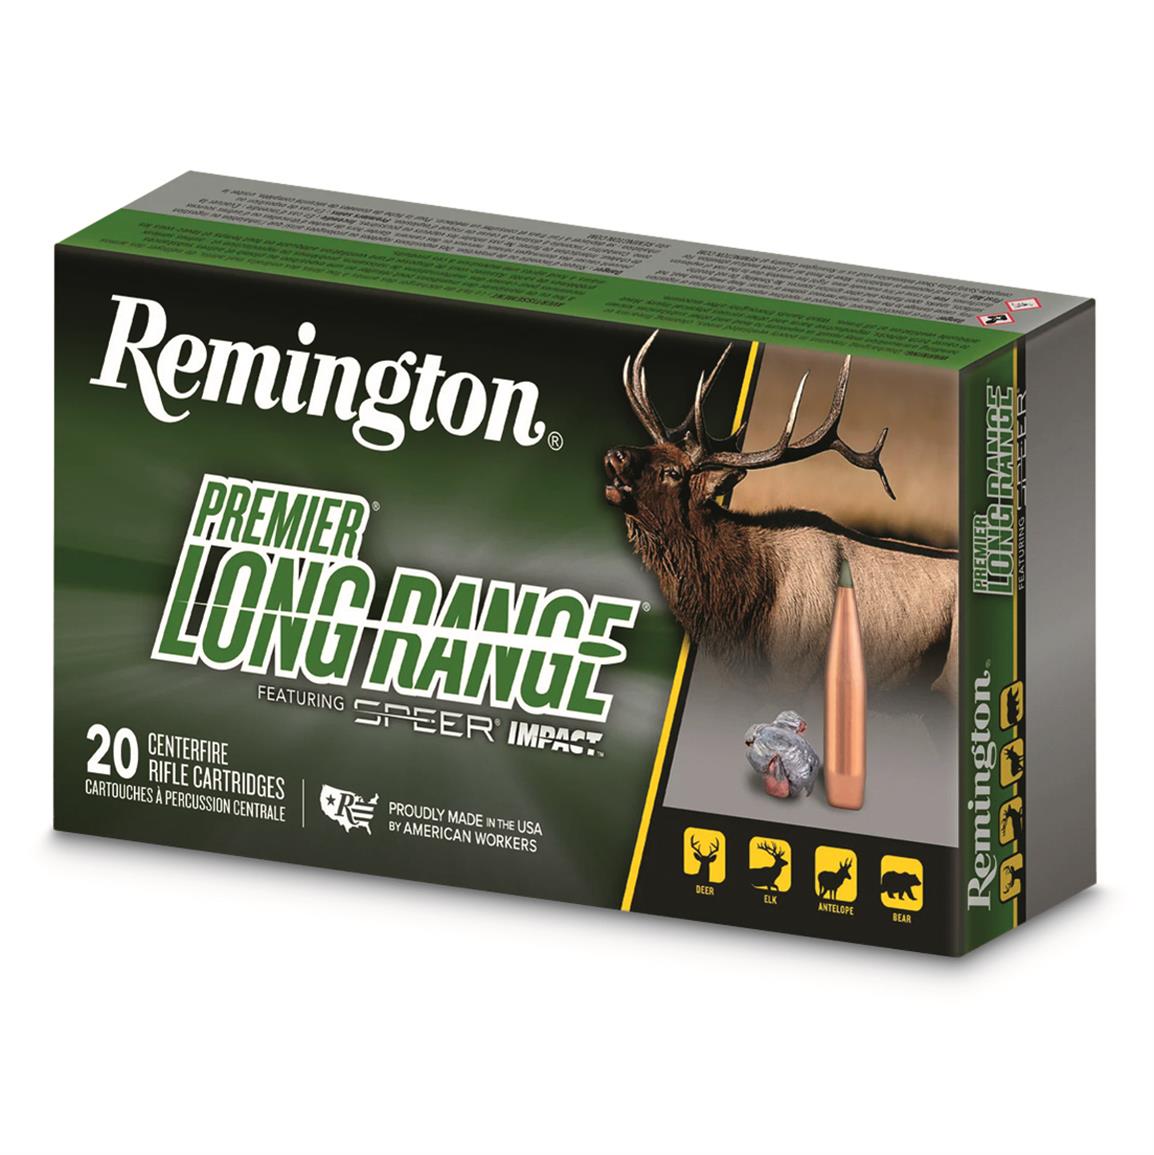 Remington Premier Long Range, 6.5mm Creedmoor, Speer Impact, 140 Grain, 20 Rounds